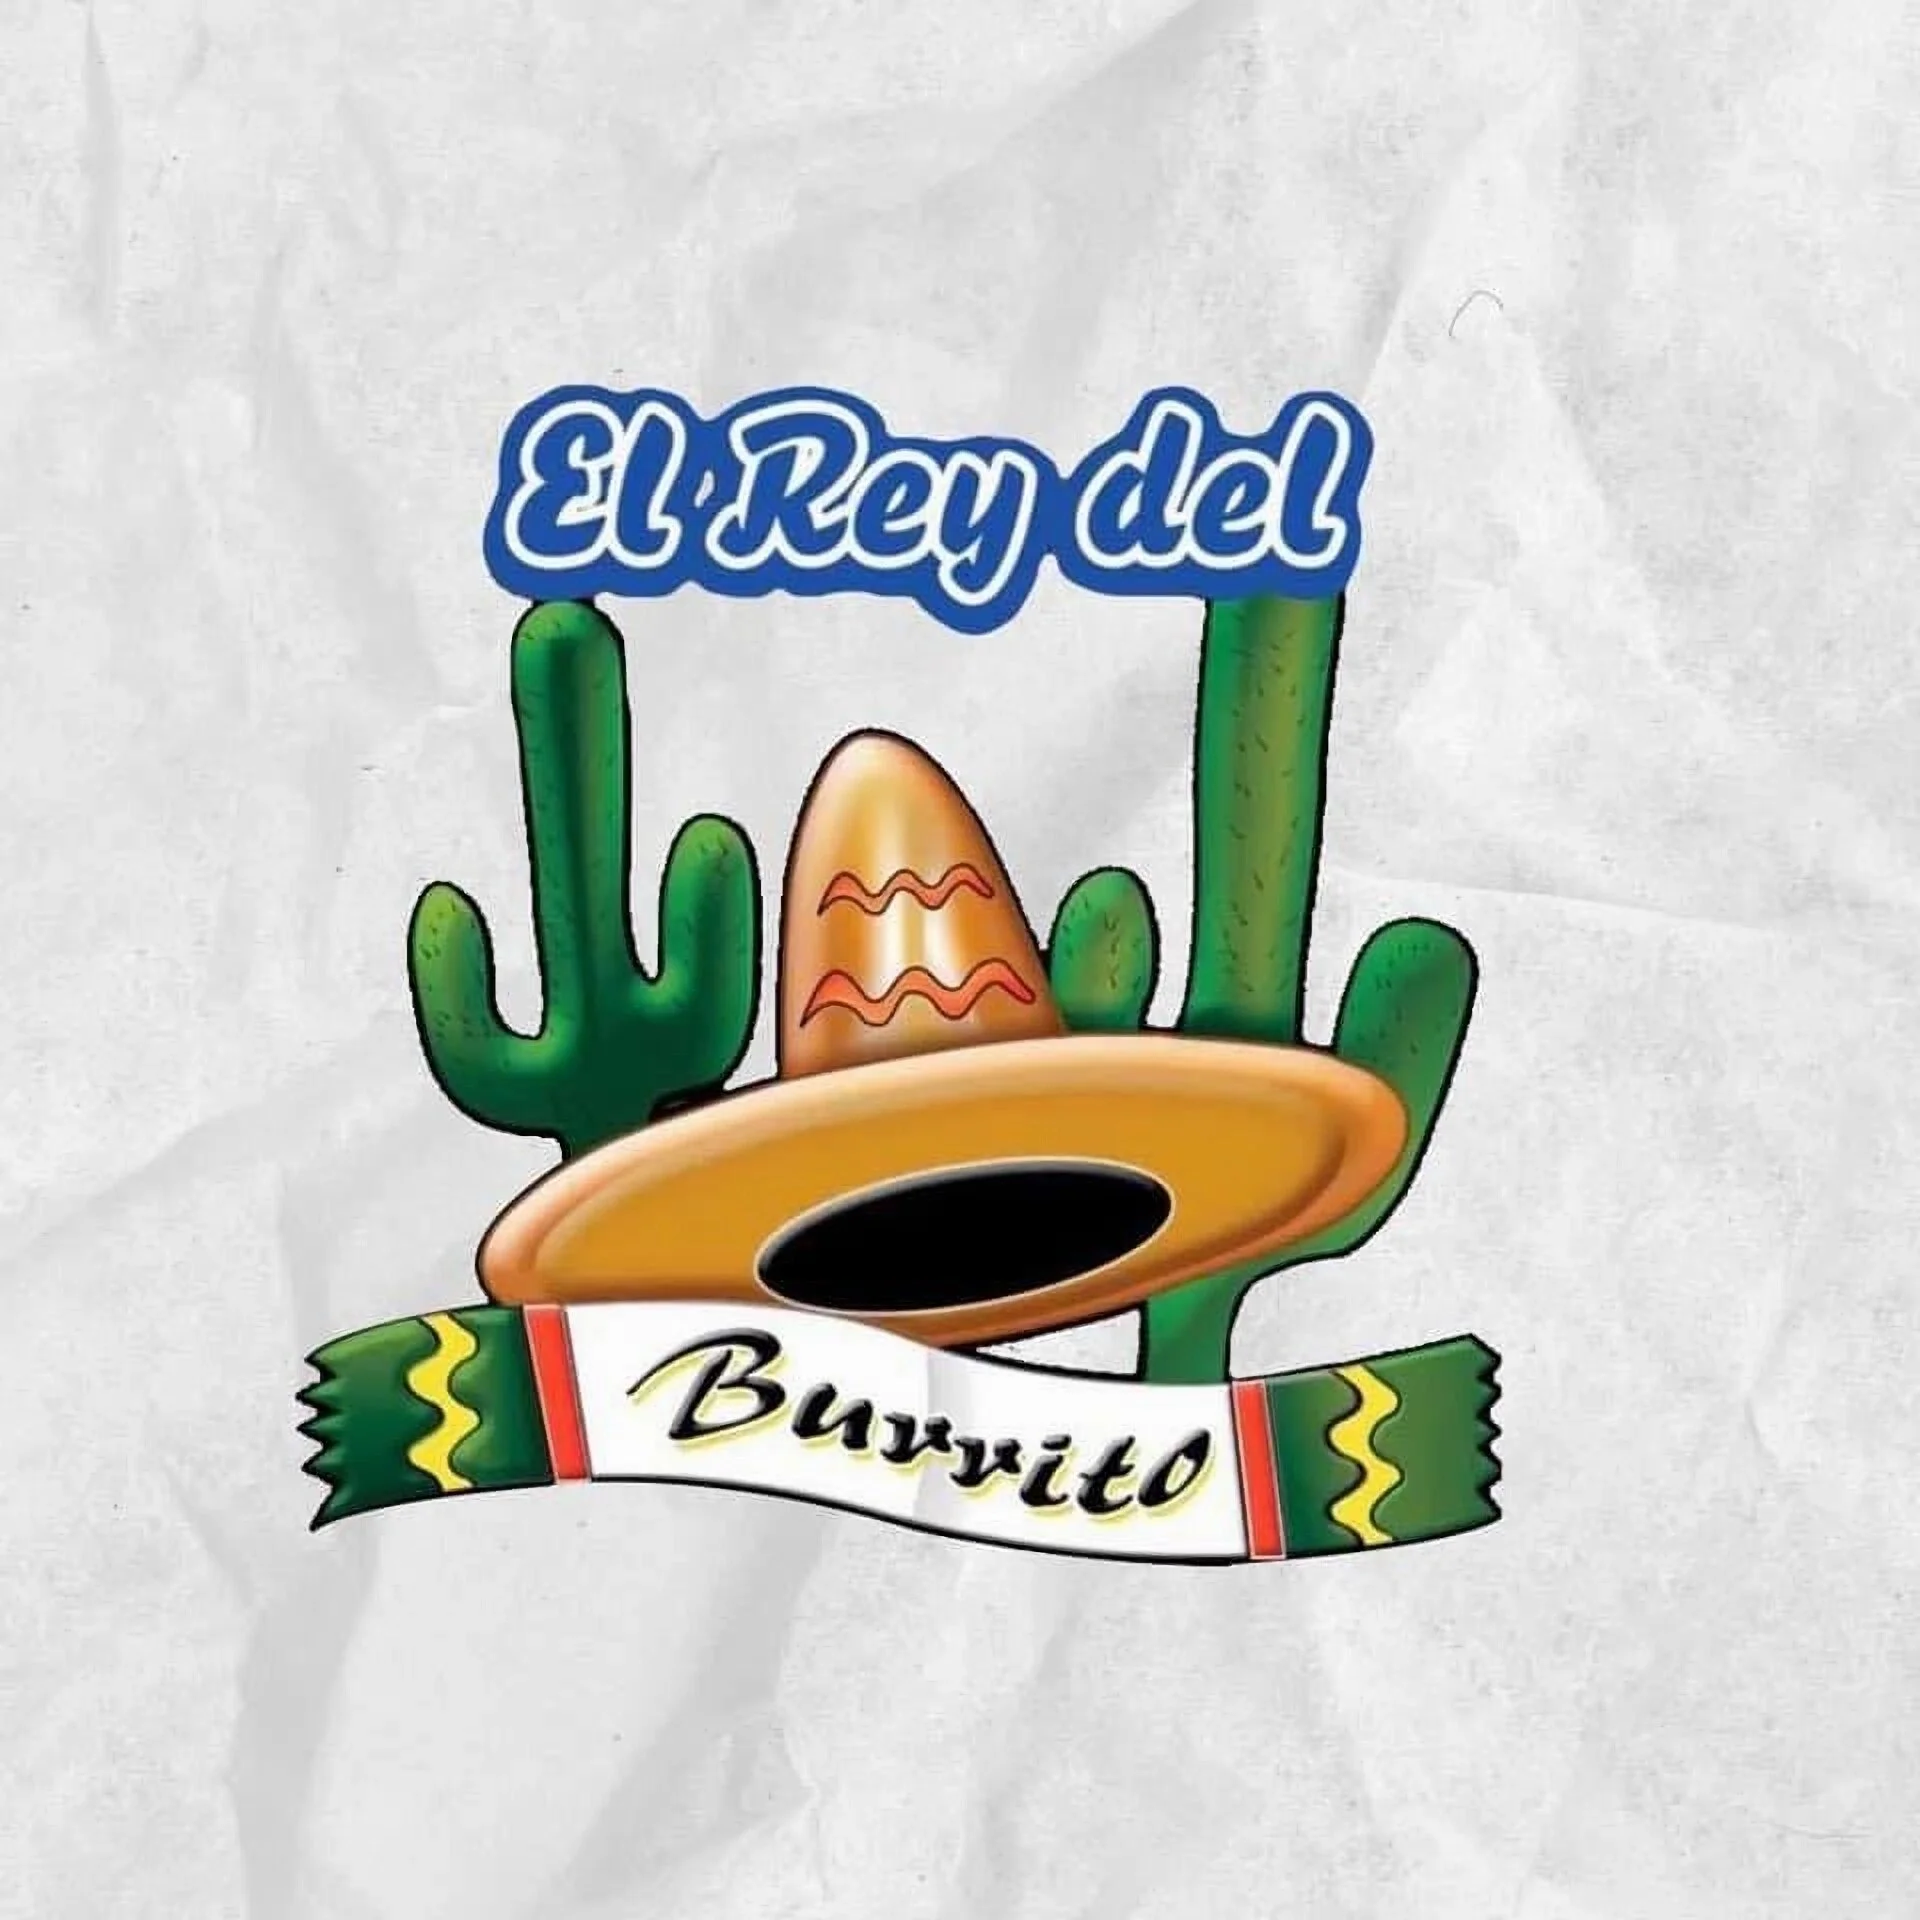 Restaurantes-el-rey-del-burrito-18246